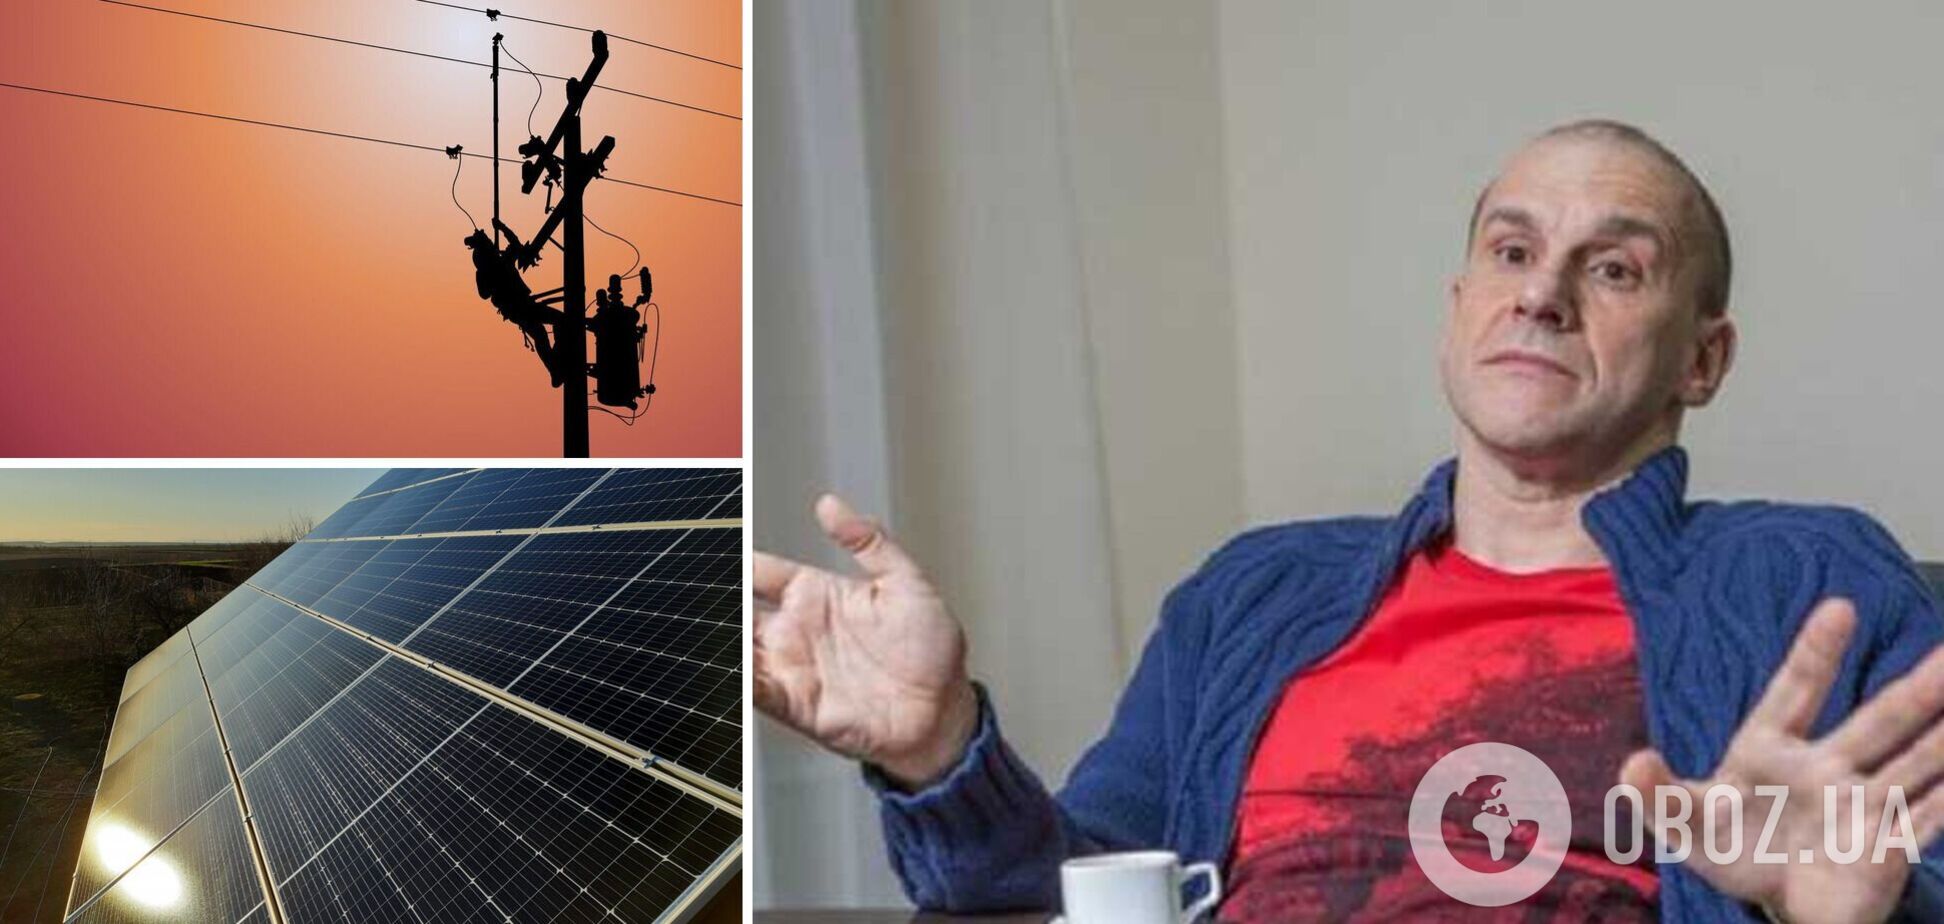 В Виннице облэнерго россиянина Григоришина отключило солнечную электростанцию на фоне уничтожения РФ украинской энергетики